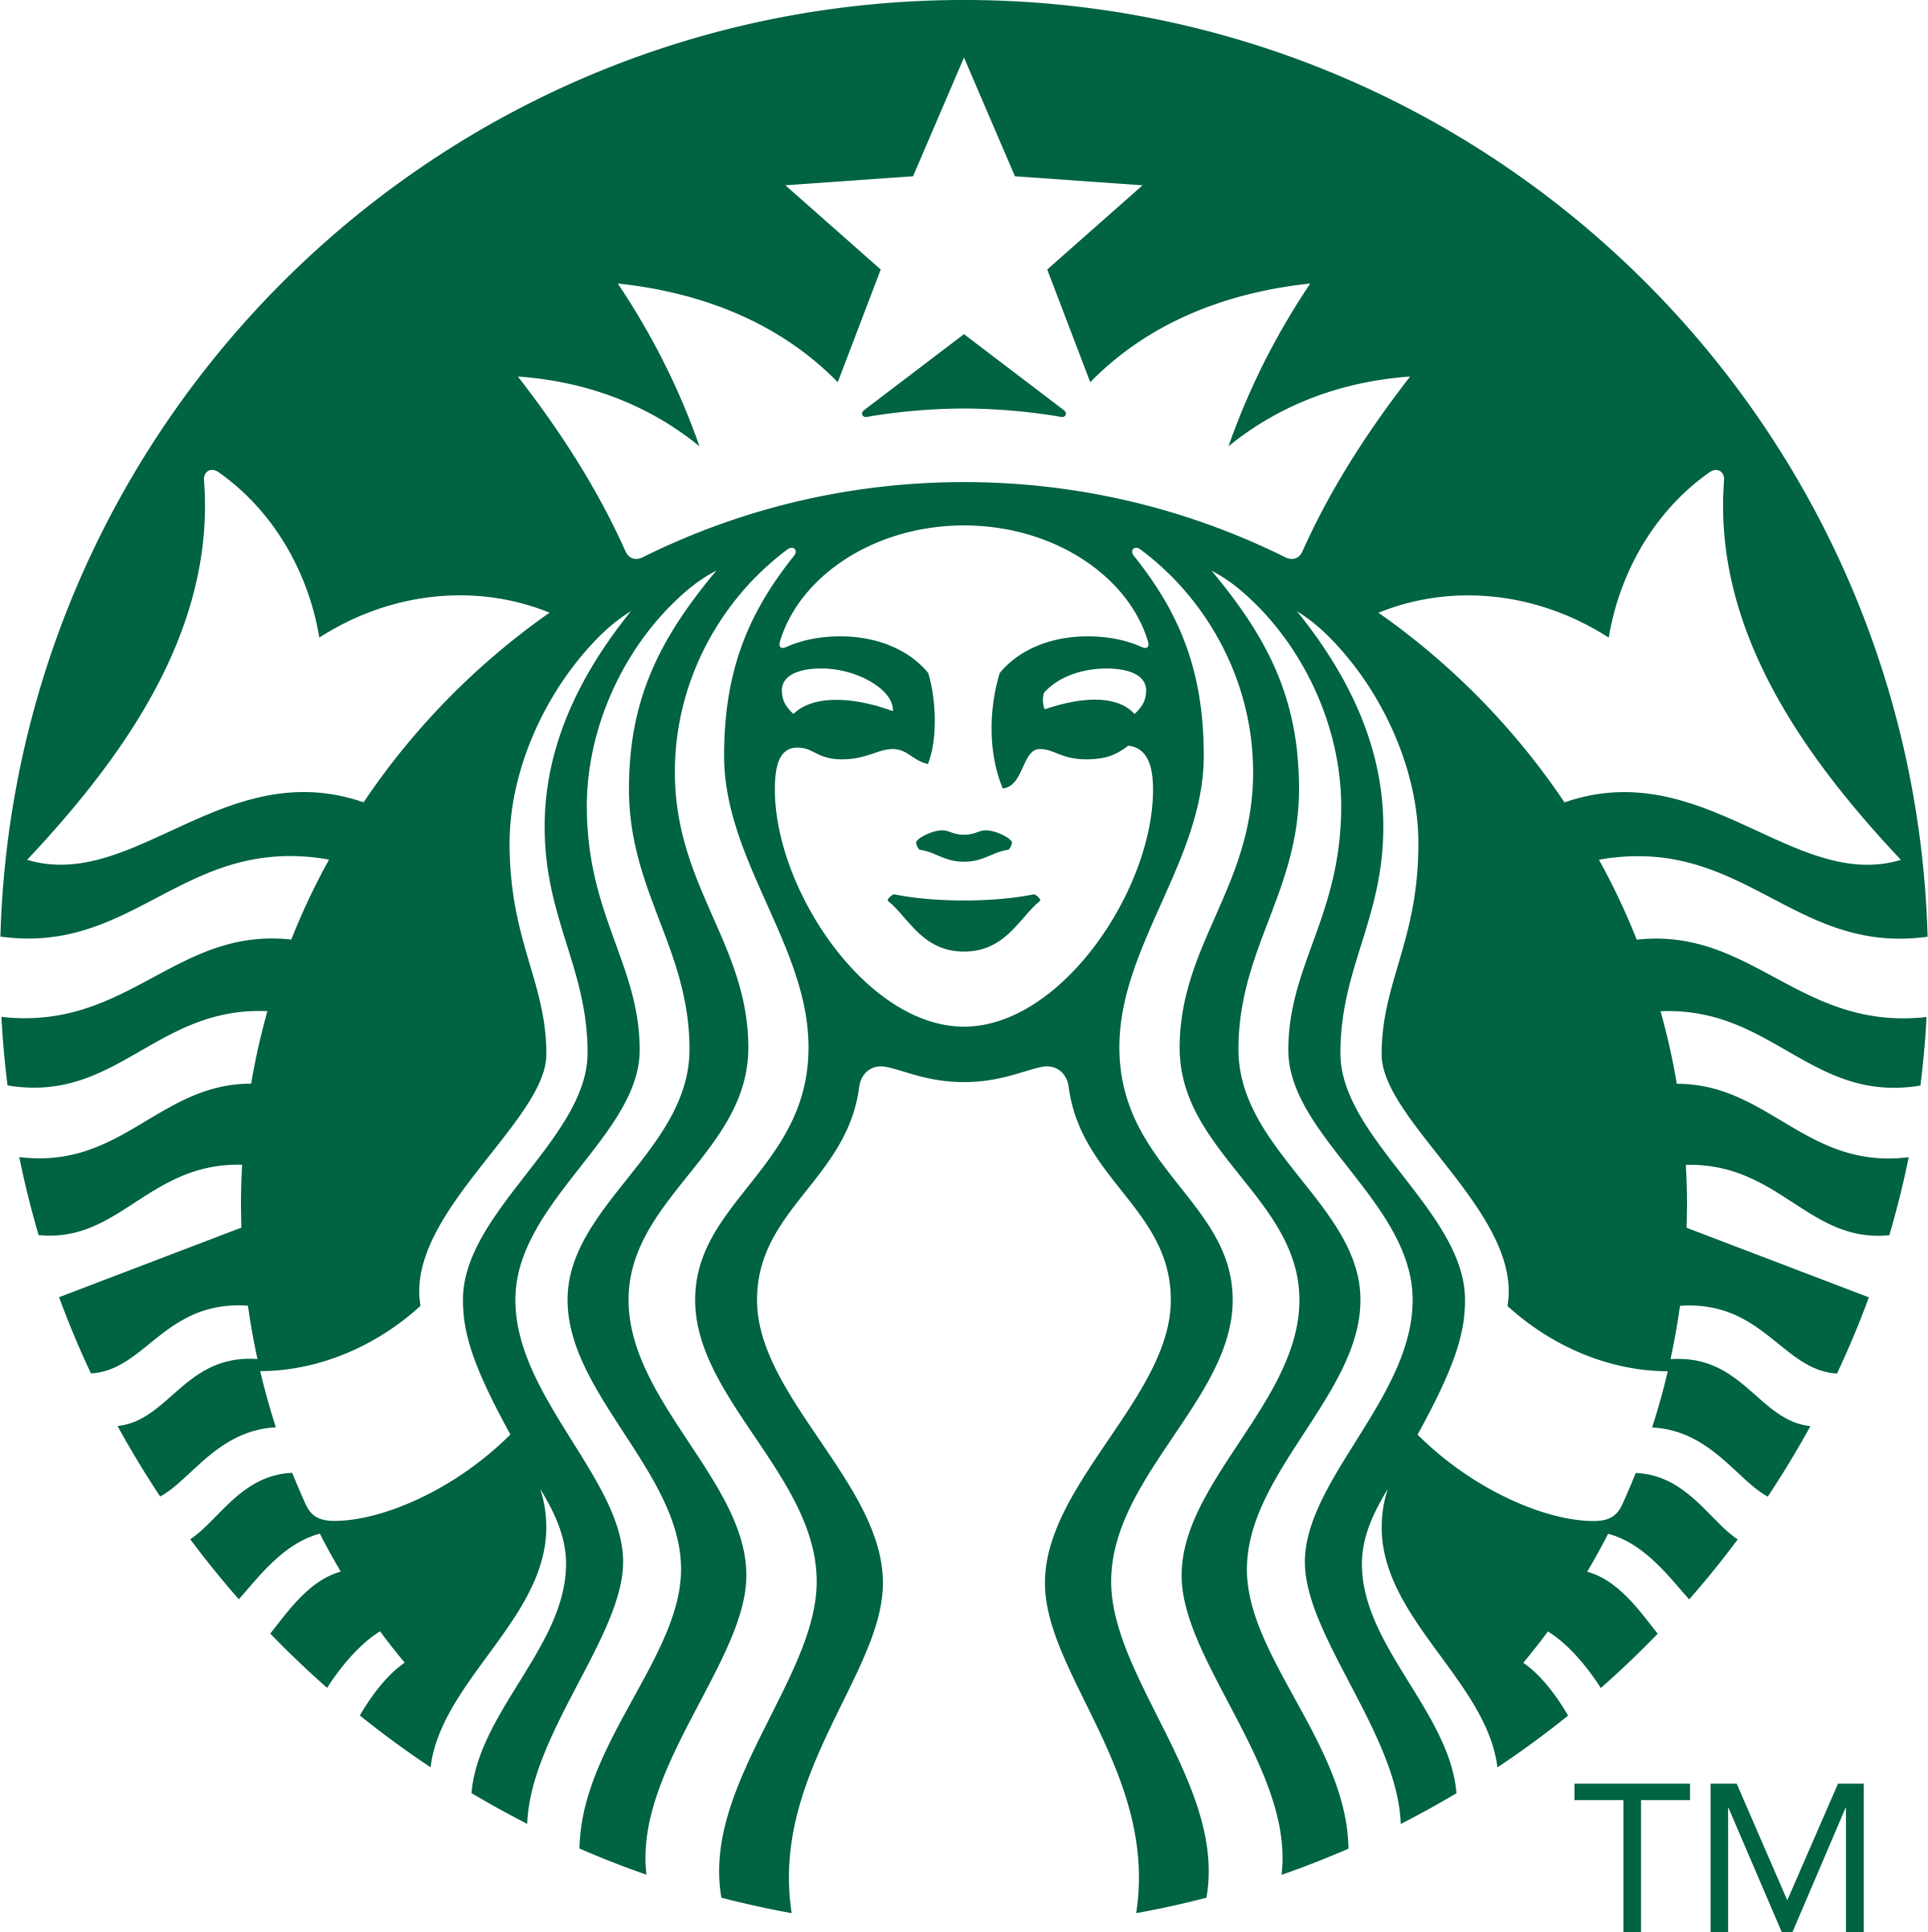 스타벅스(Starbucks) 로고